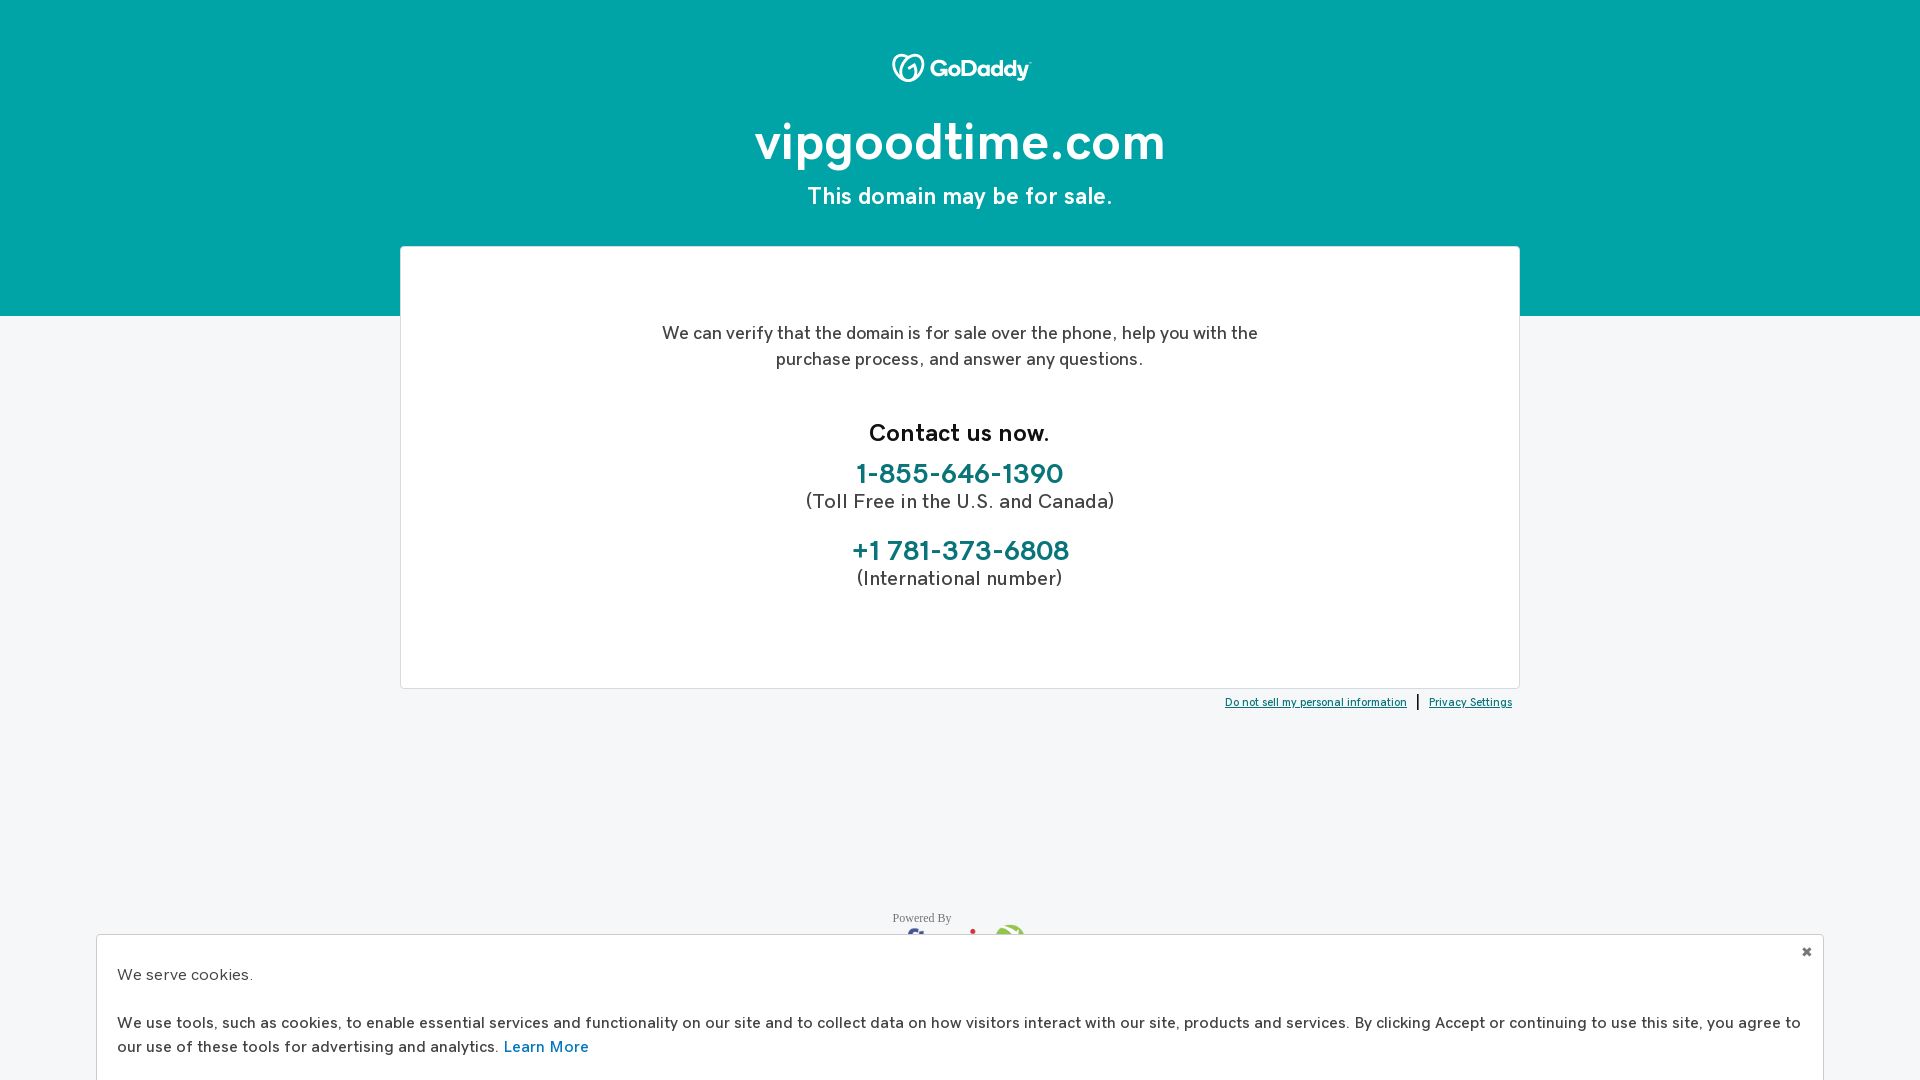 Estado web vipgoodtime.com está   ONLINE